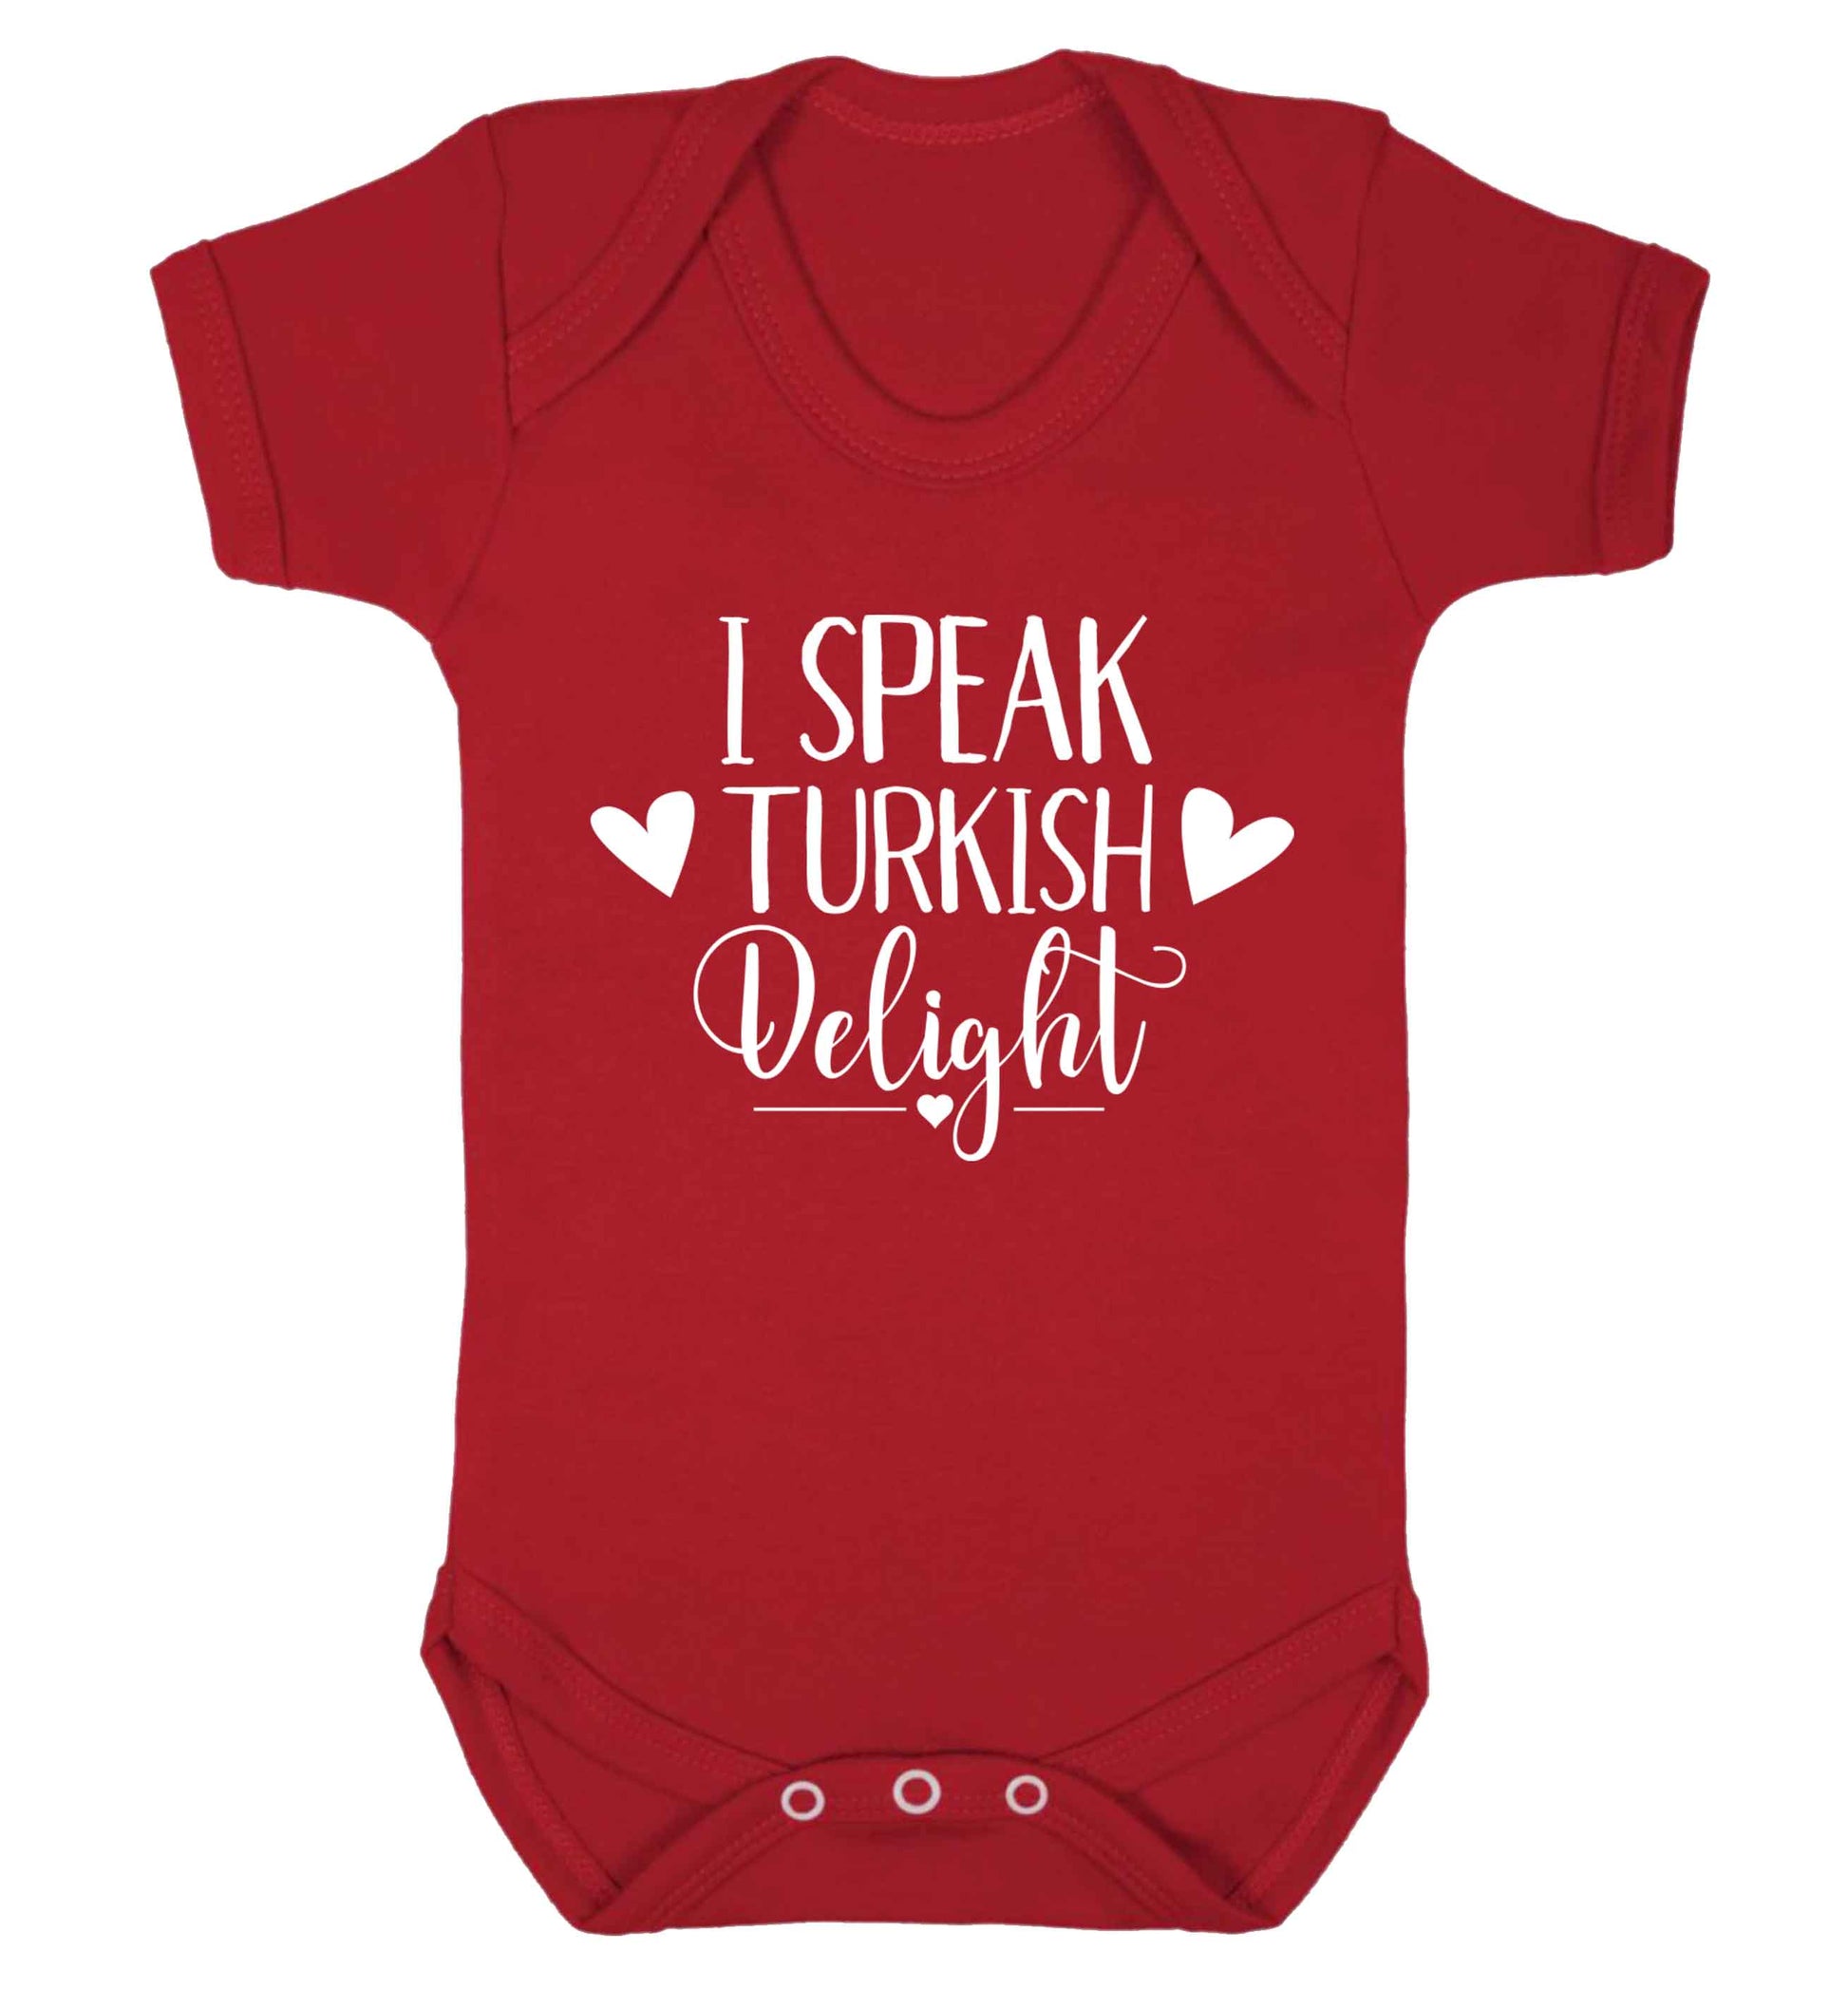 I speak turkish...delight Baby Vest red 18-24 months